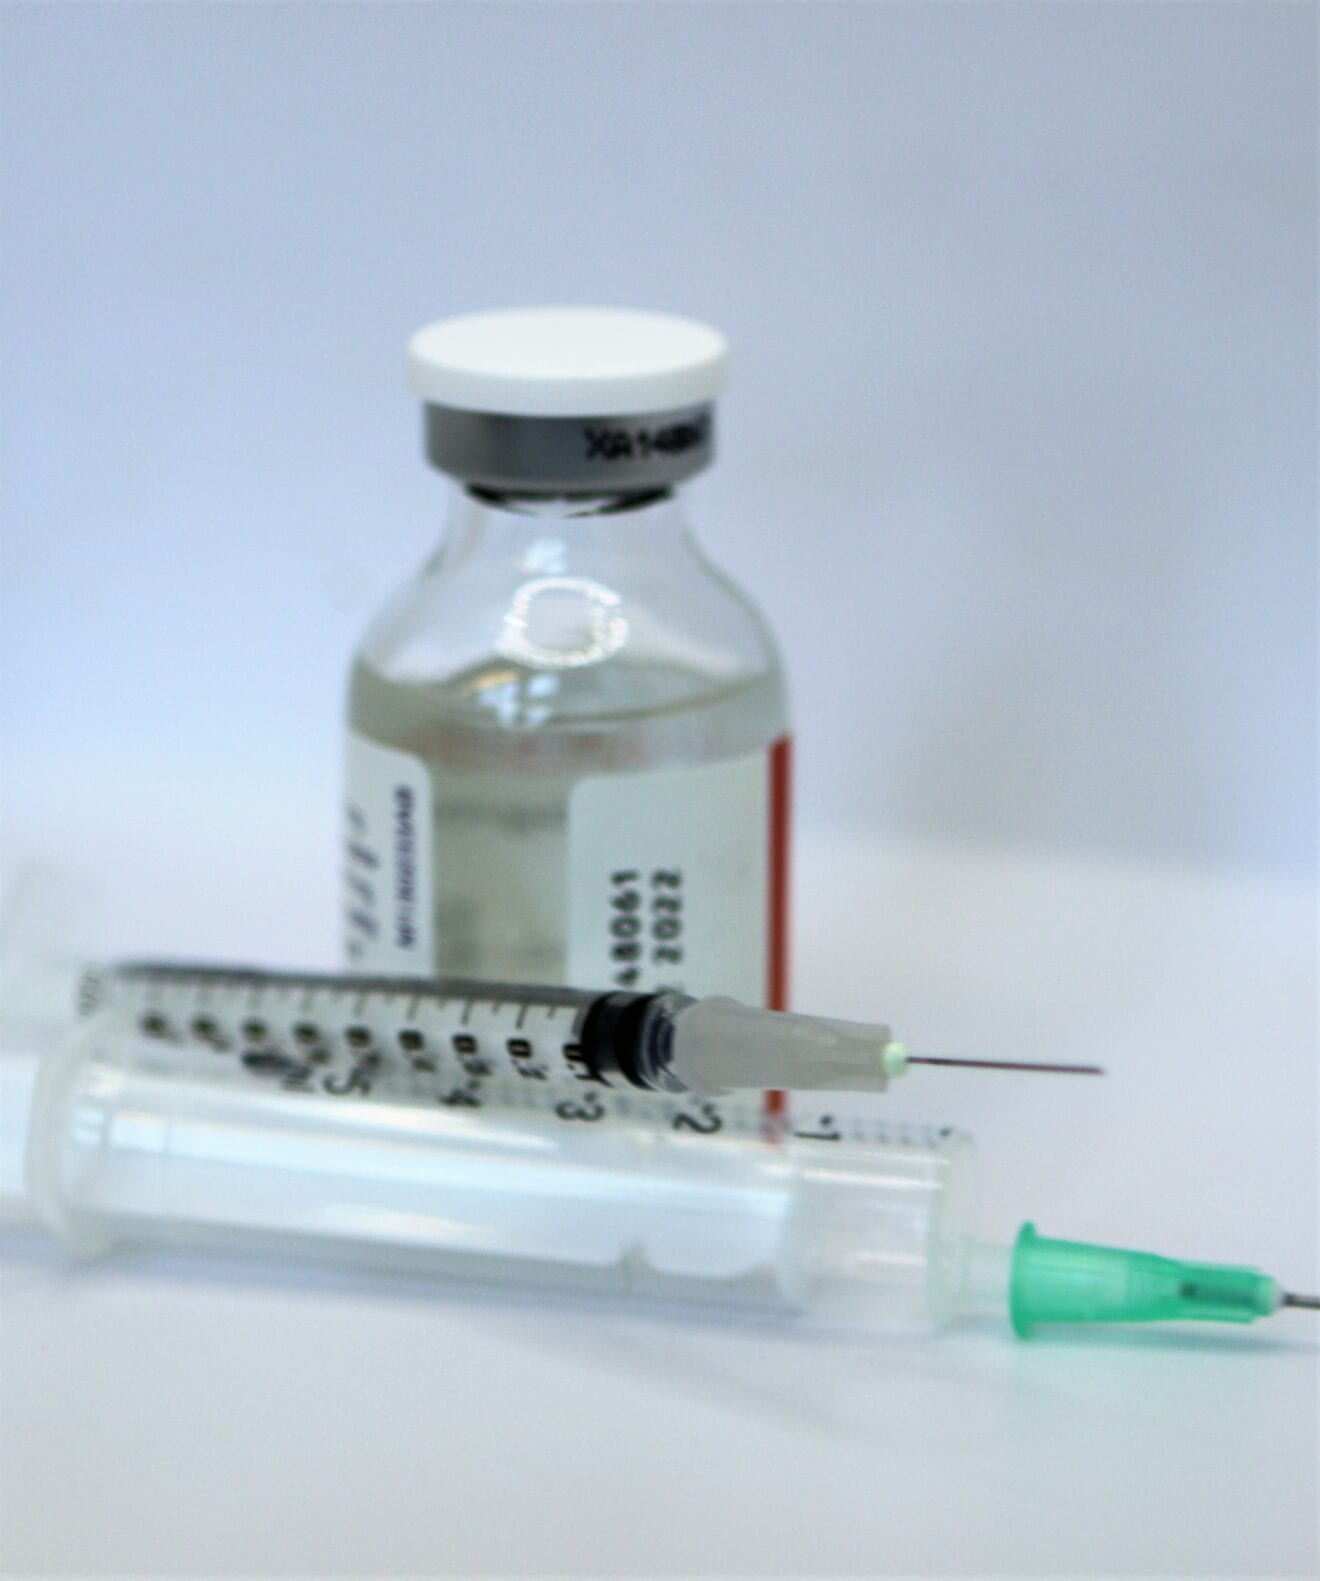 Tilmelding til at modtage overskydende vaccine mod COVID-19